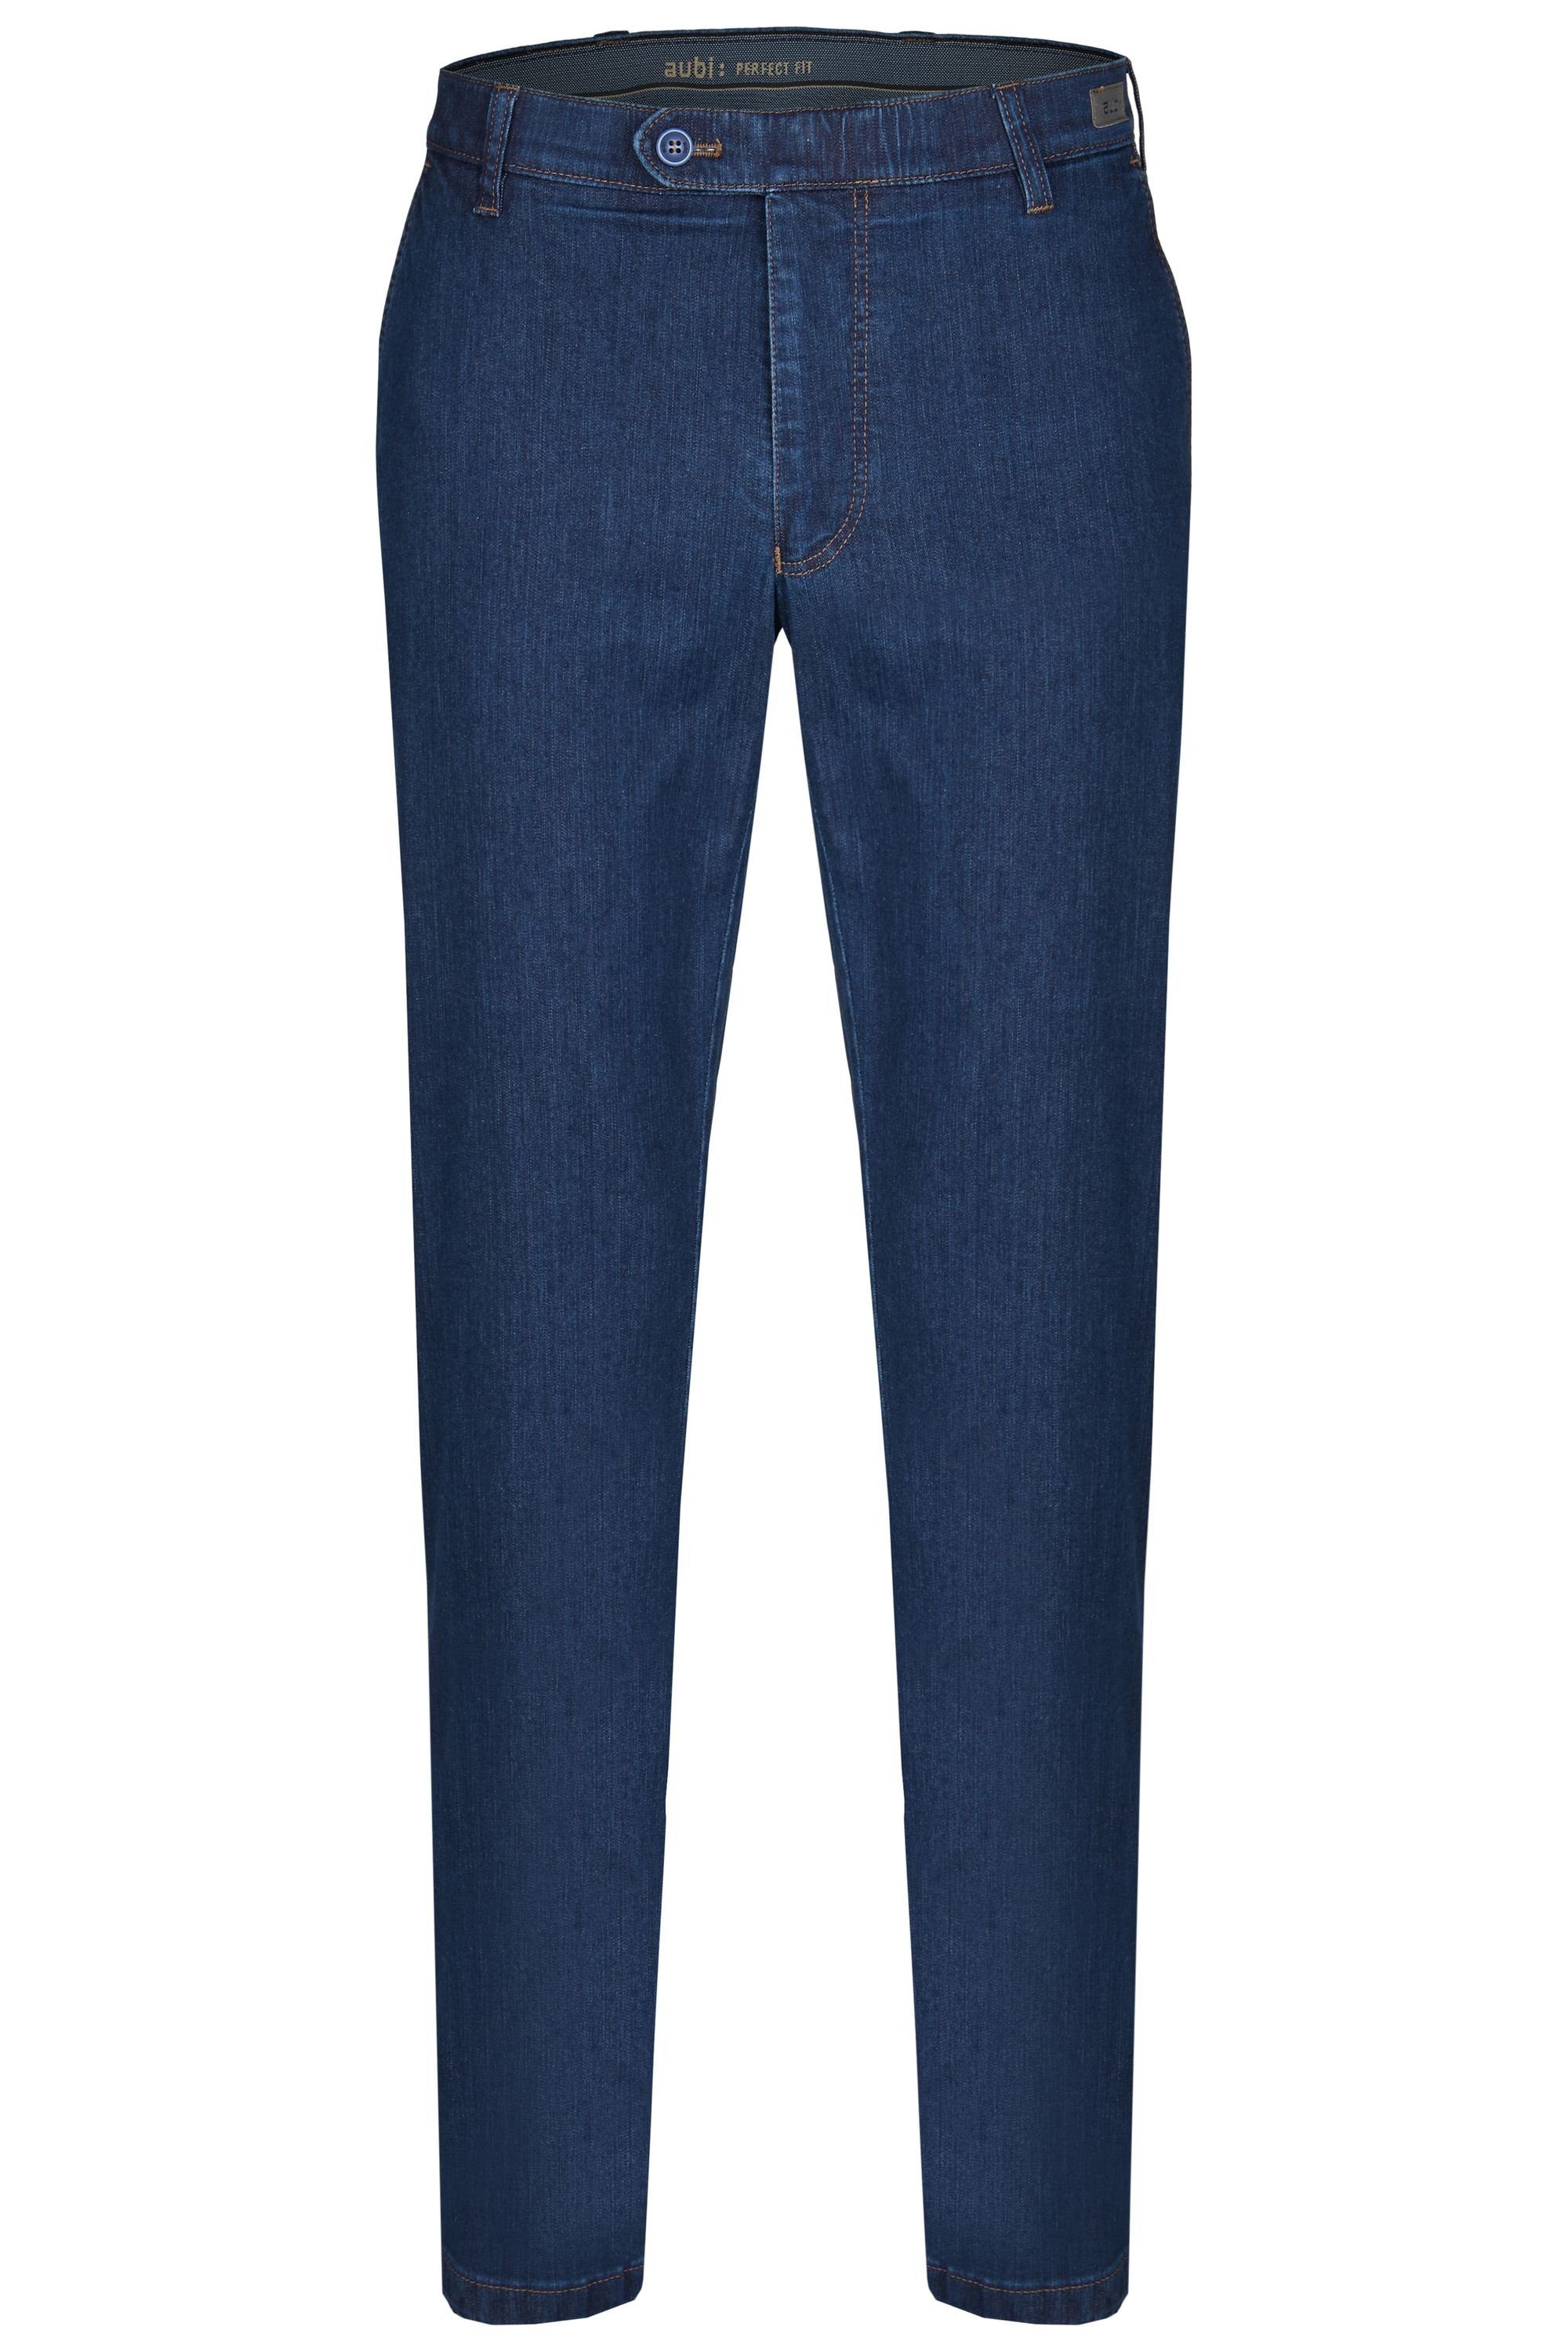 aubi: Bequeme Jeans »aubi Perfect Fit Herren Ganzjahres Jeans Hose Stretch  aus Baumwolle High Flex Modell 526« online kaufen | OTTO